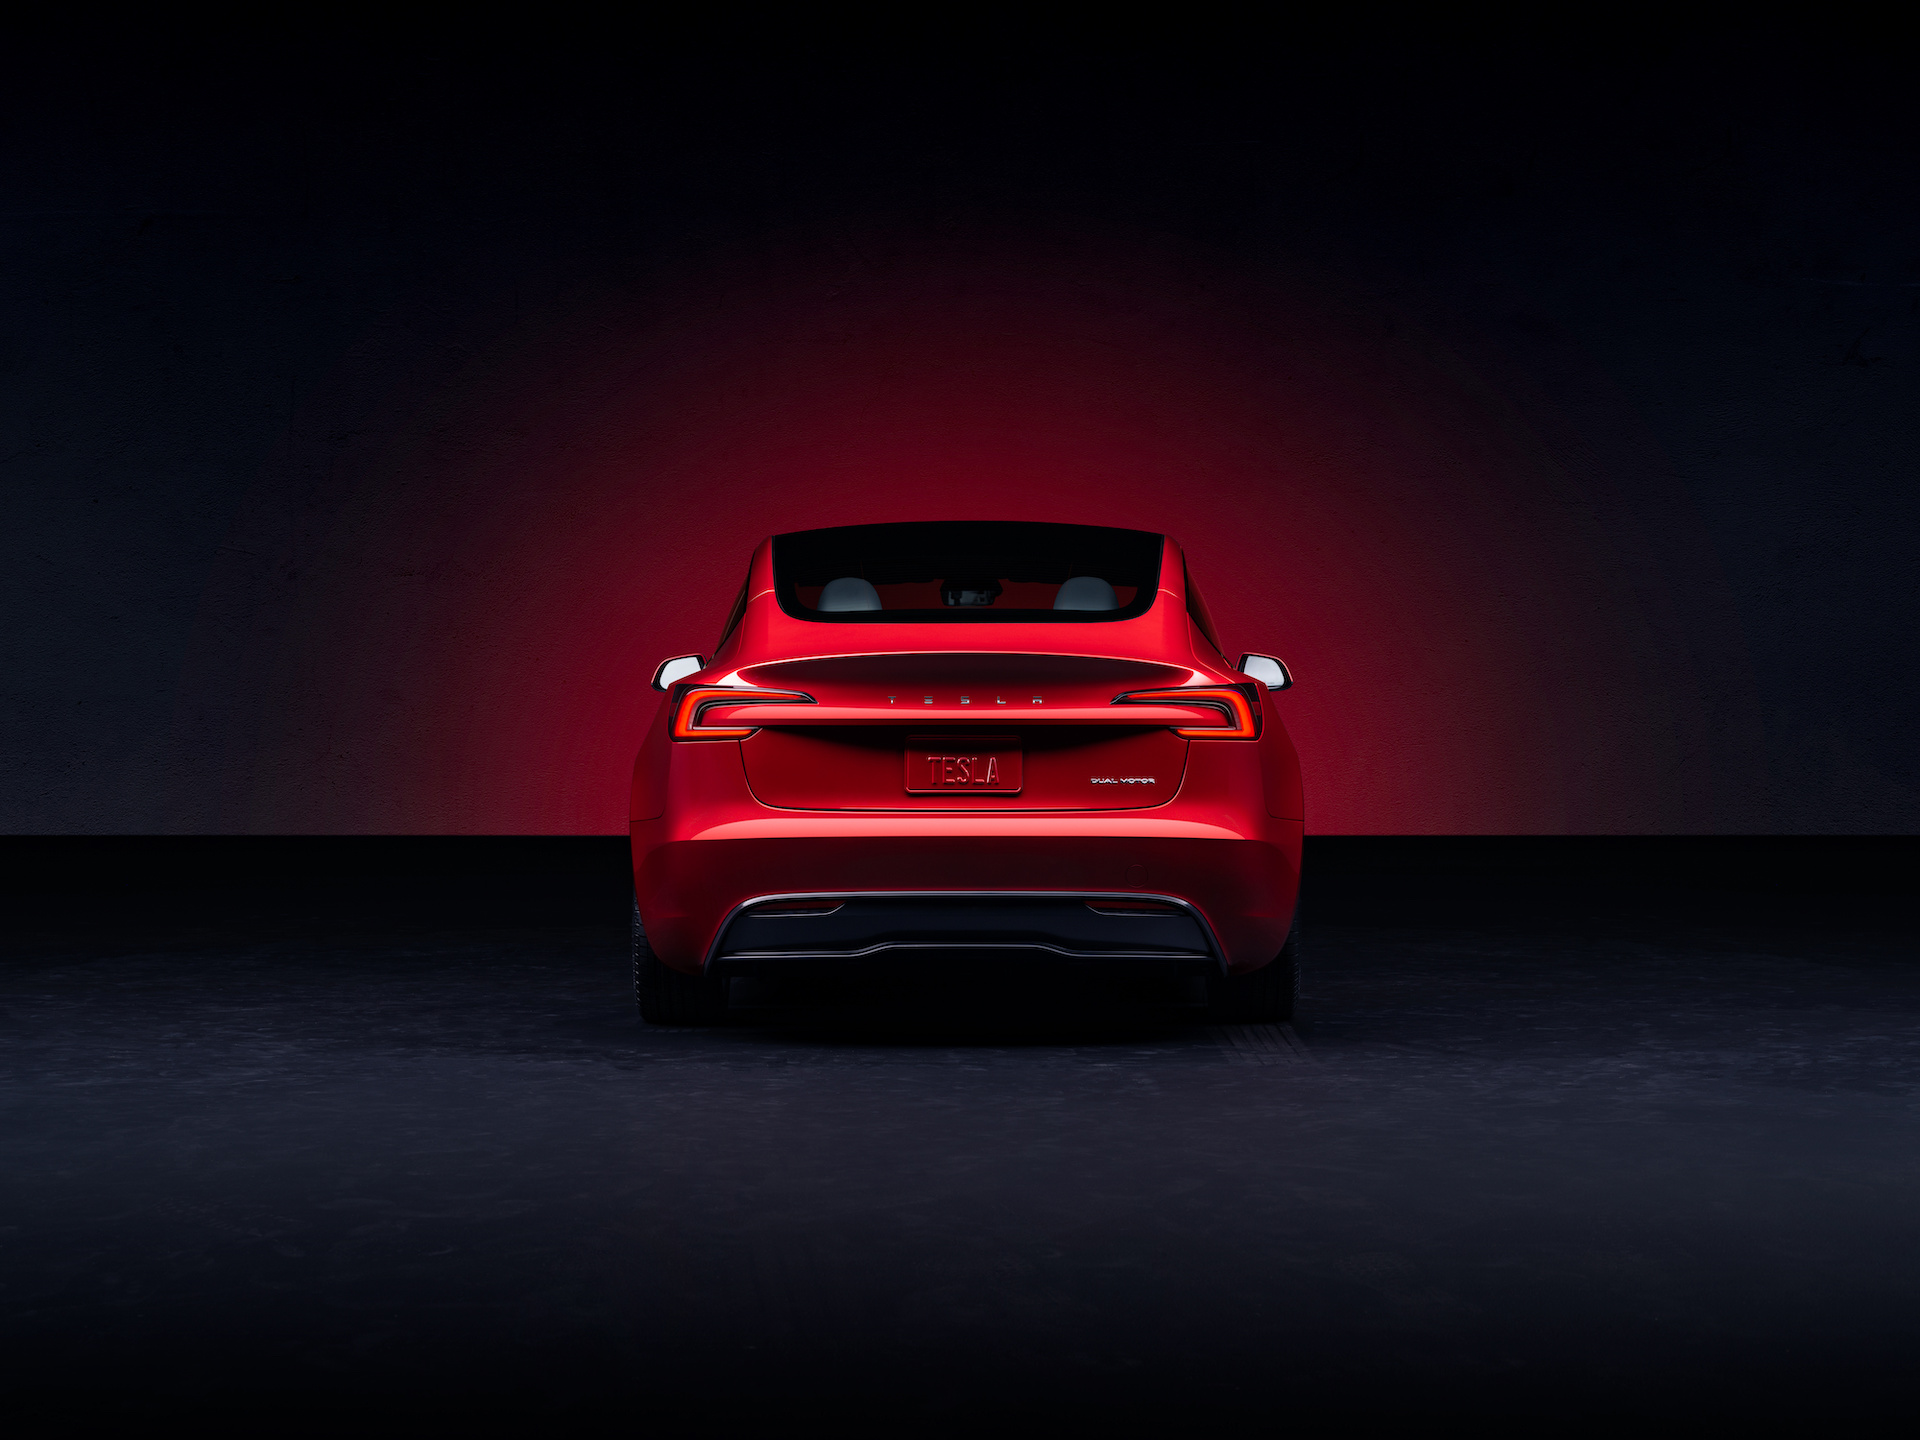 La nuova Model 3 di Tesla fa impallidire tutte le auto elettriche, inclusa la Dacia Spring